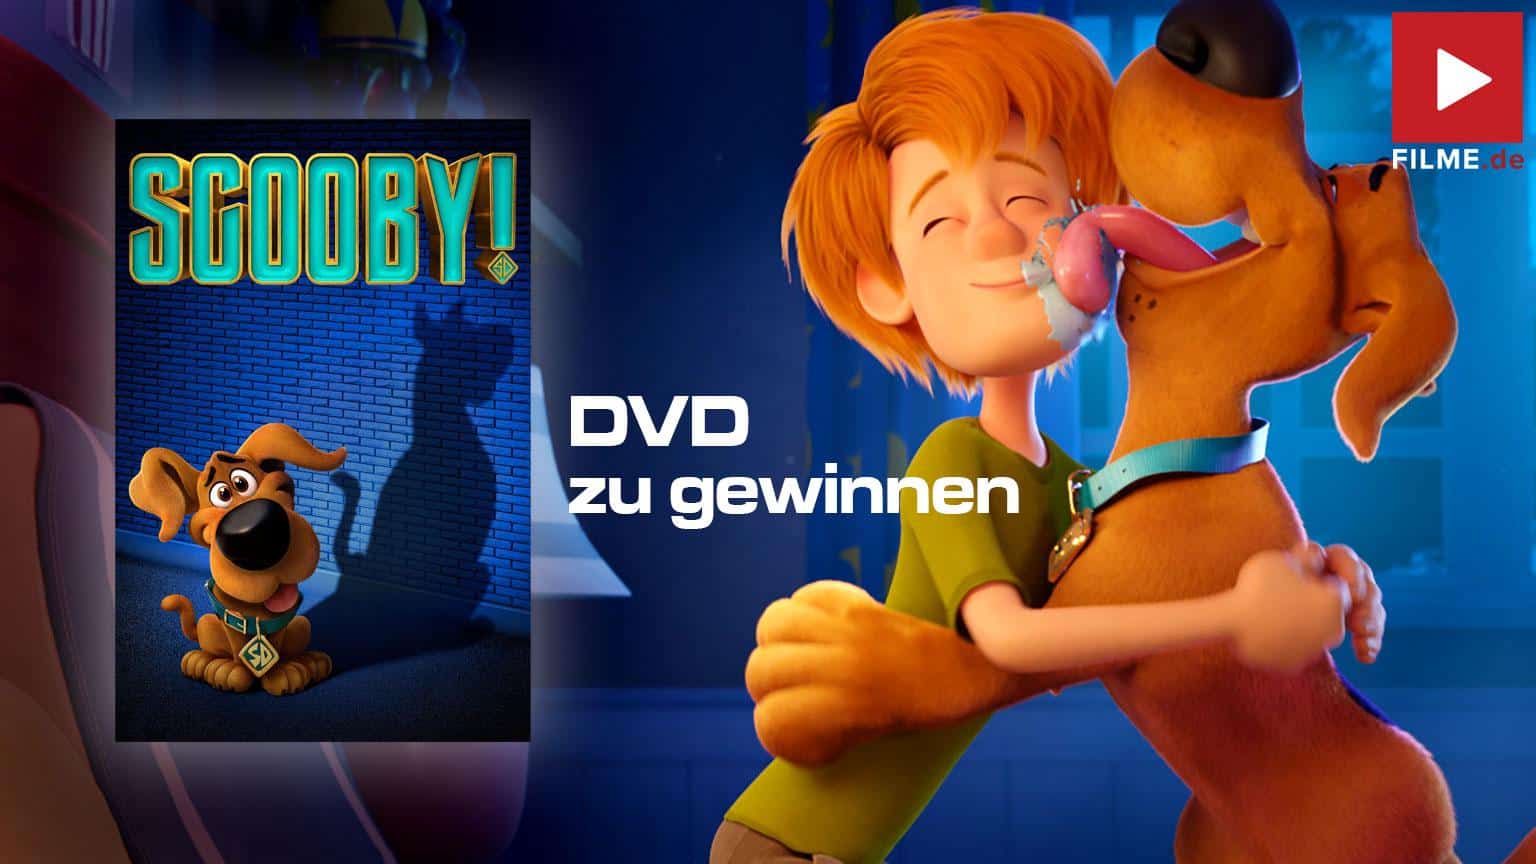 Scooby! Voll verwedelt Gewinnspiel gewinnen Blu-ray DVD shop kaufen Artikelbild